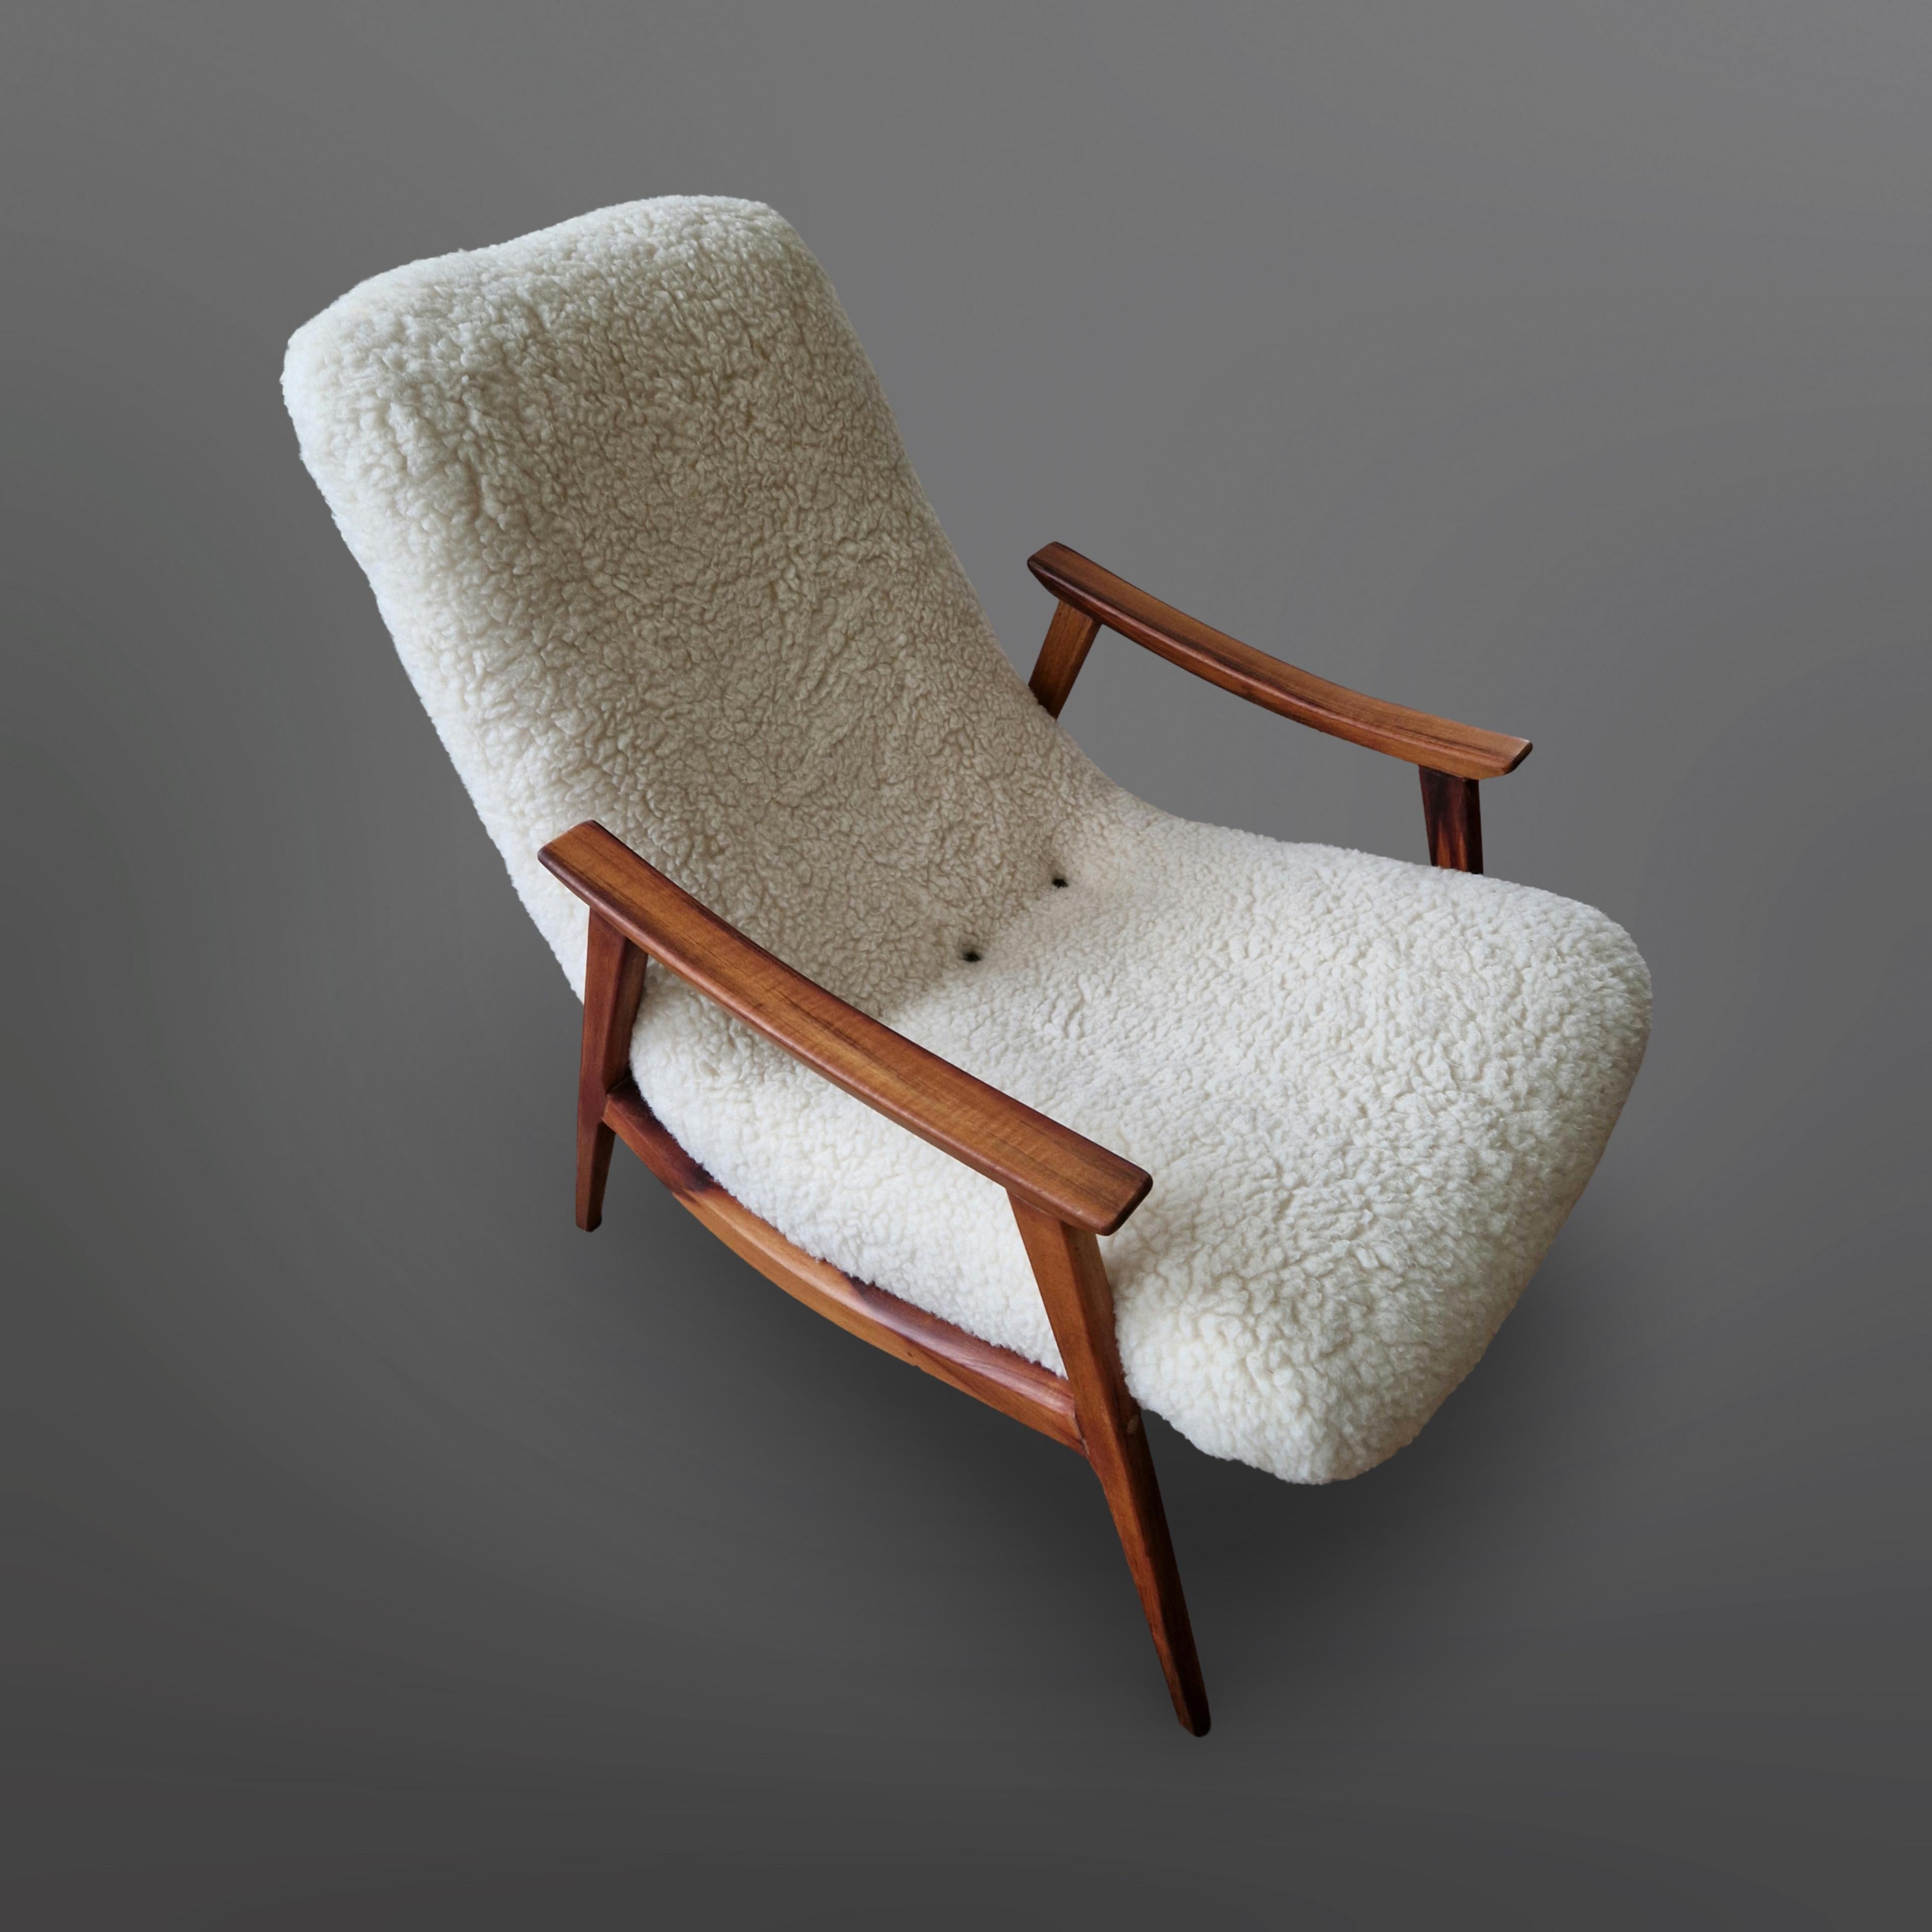 Vollständig restaurierter moderner Sessel aus der Mitte des Jahrhunderts. Hergestellt von Gelli industry de móveis in den 1950er Jahren.
Der Rahmen ist aus Palisanderholz mit einer satten, tiefen Farbe und prächtigen Maserung gefertigt. Der